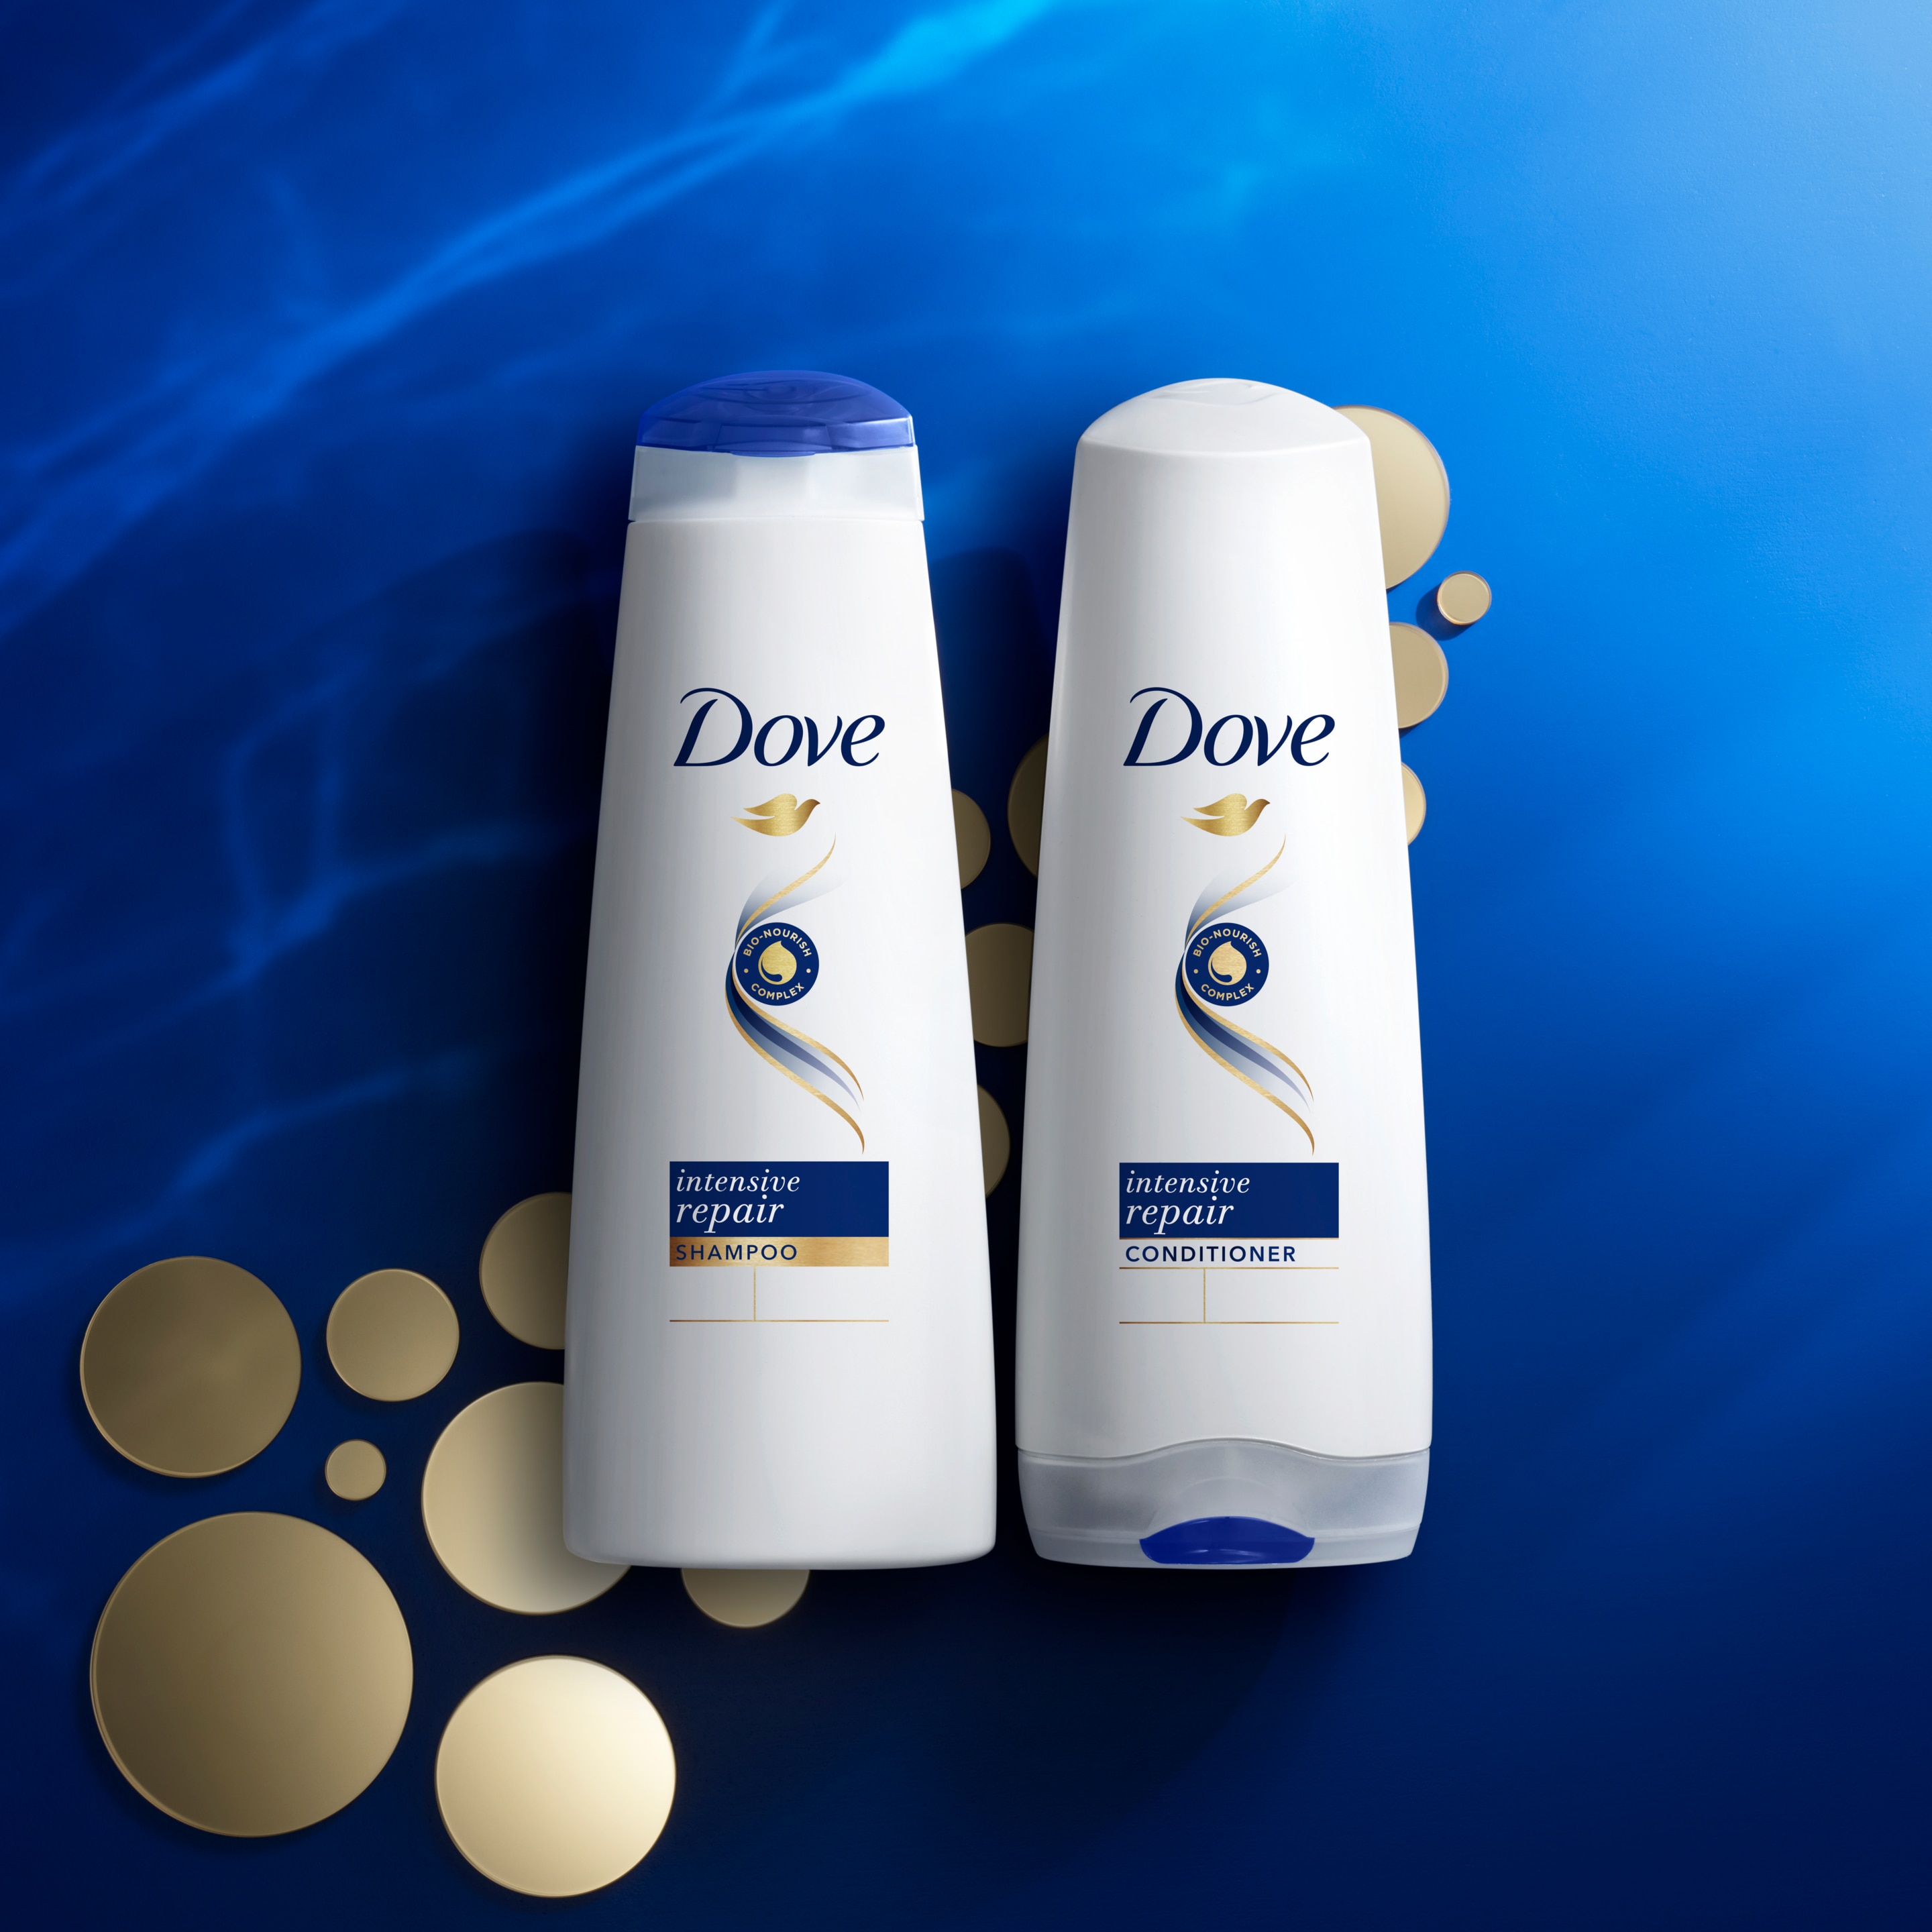 Dove Intensive Repair Shampoo y Conditioner